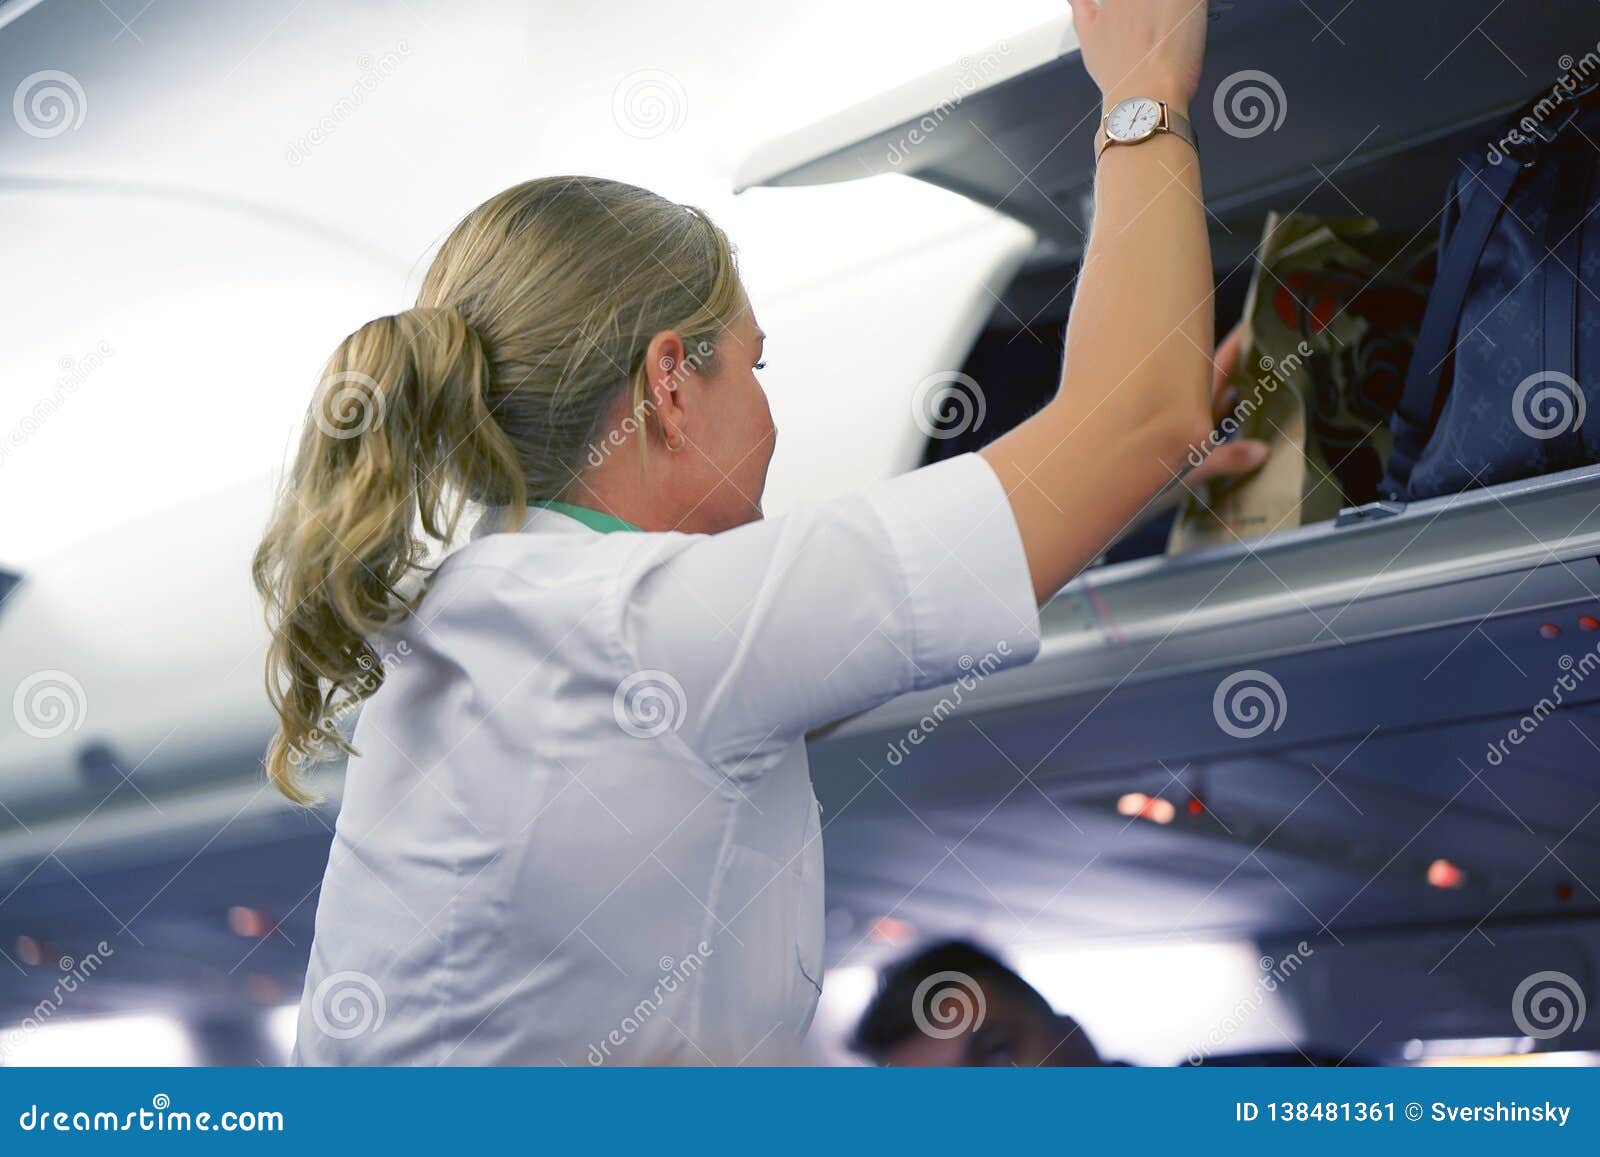 制服姿势的空中小姐反对小飞机 库存照片. 图片 包括有 飞机, 白种人, 女孩, 选件类, 砍刀, 工作 - 126460032